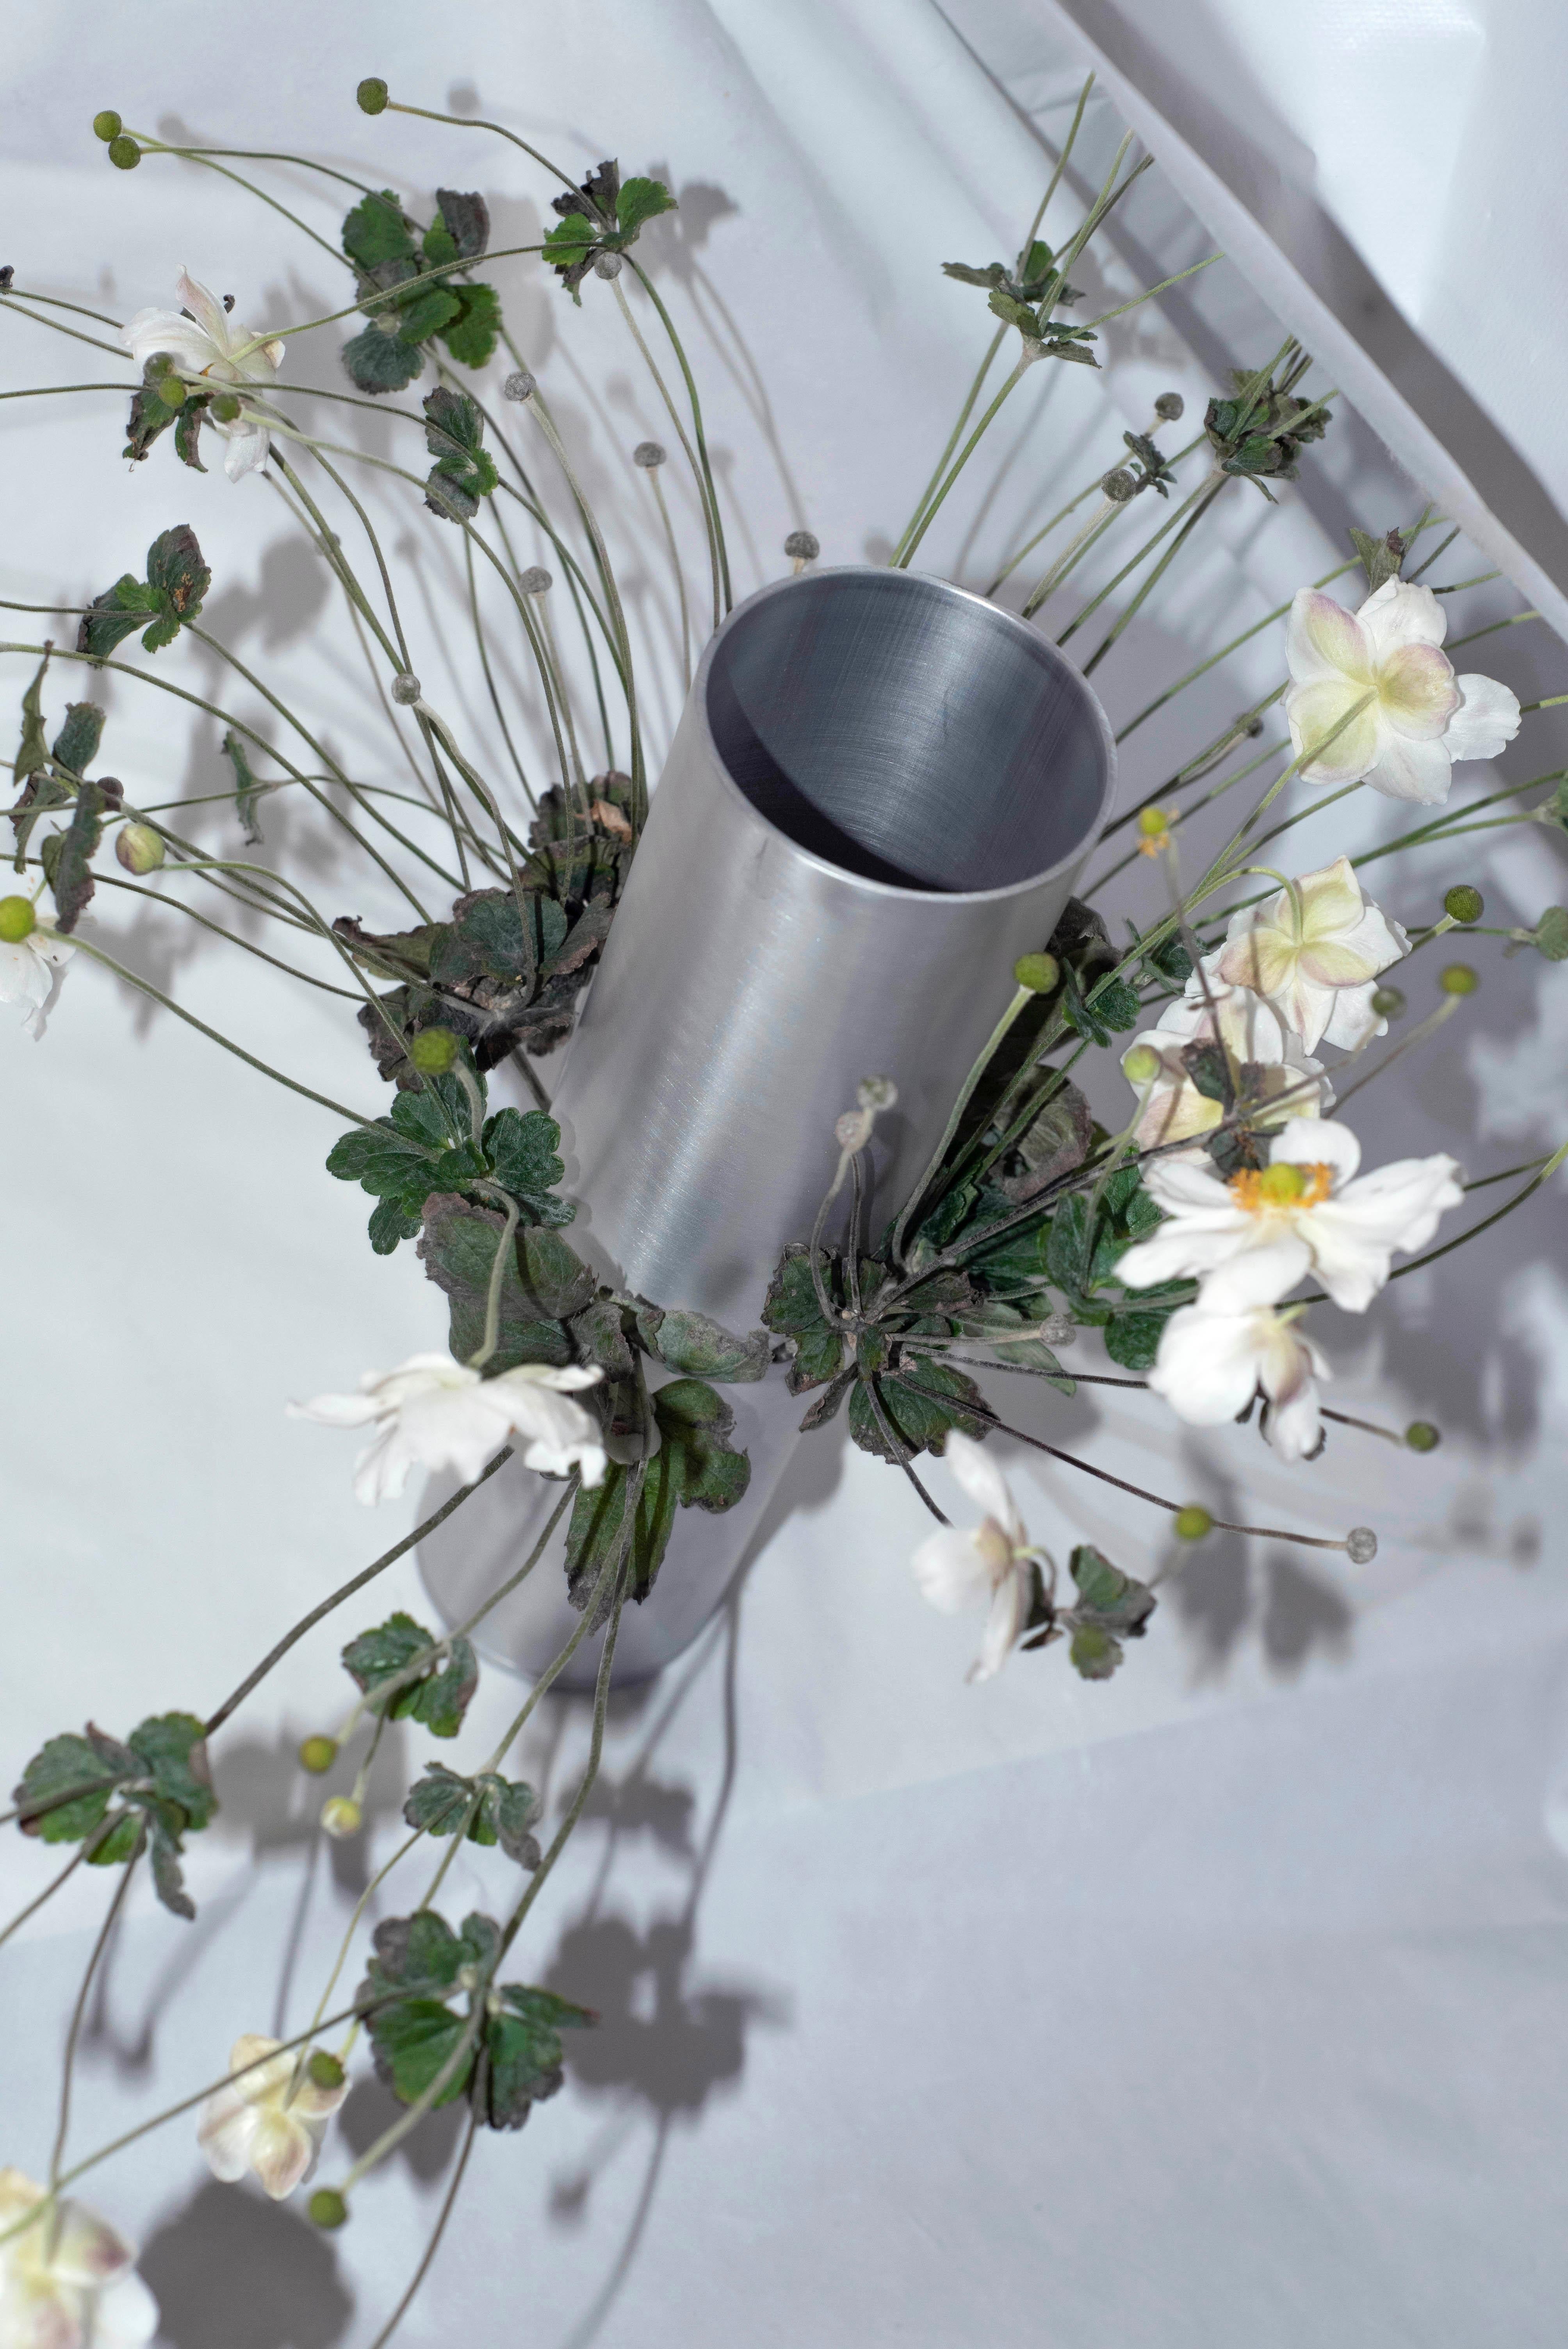 Tubito 003 ist eine hochglanzpolierte Aluminiumvase mit seitlichen Perforationen, die als alternative Ouvertüre für die Blumen dienen, für die sie gebaut wurde. Inspiriert von der japanischen Ikebana-Kunst und den spanischen Almorratxes, ist